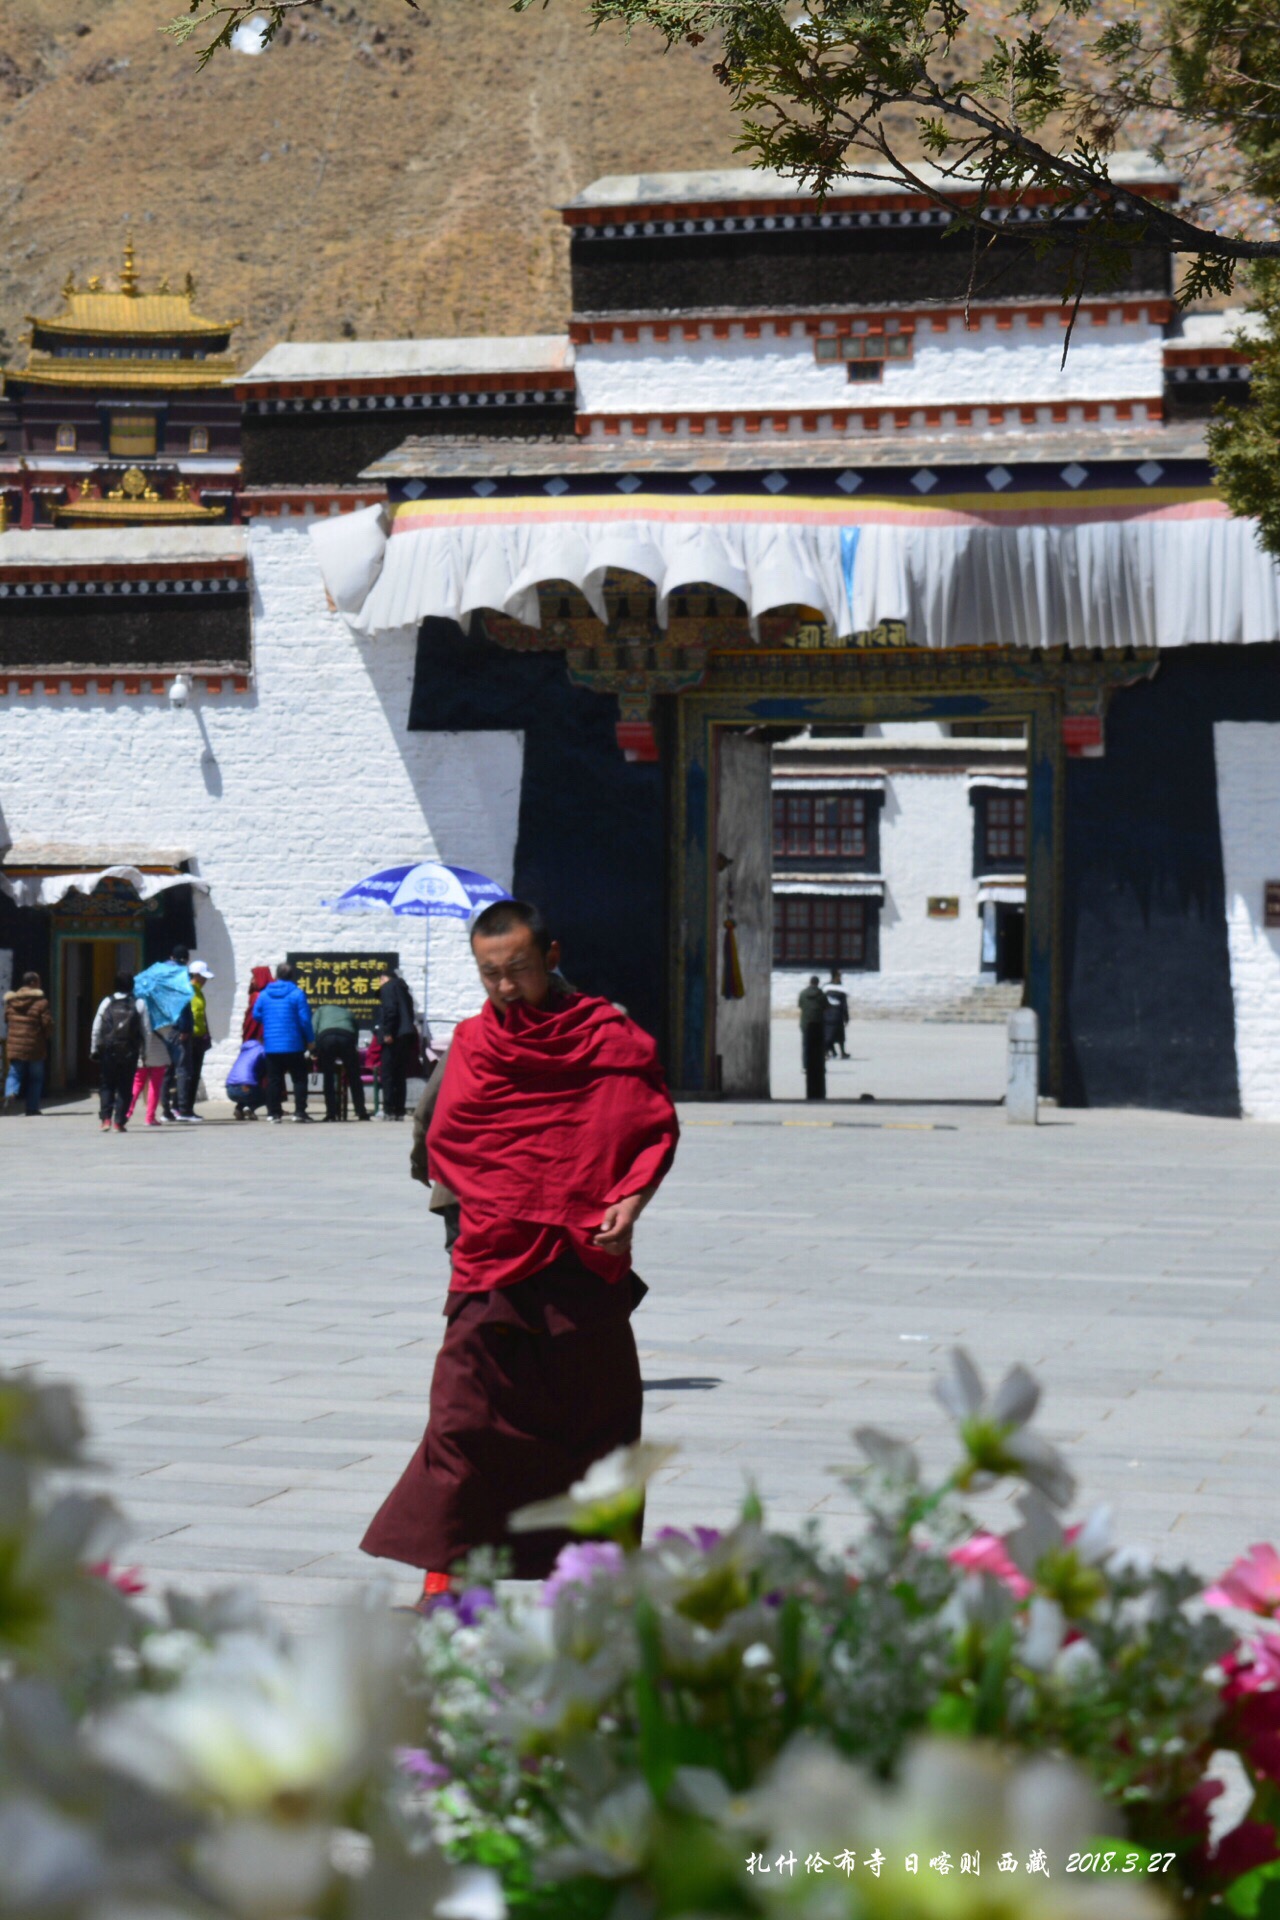 西藏 扎什伦布寺 扎什伦布寺：可与布达拉宫相媲美。它与拉萨的“三大寺”甘丹寺、色拉寺、哲蚌寺合称藏传